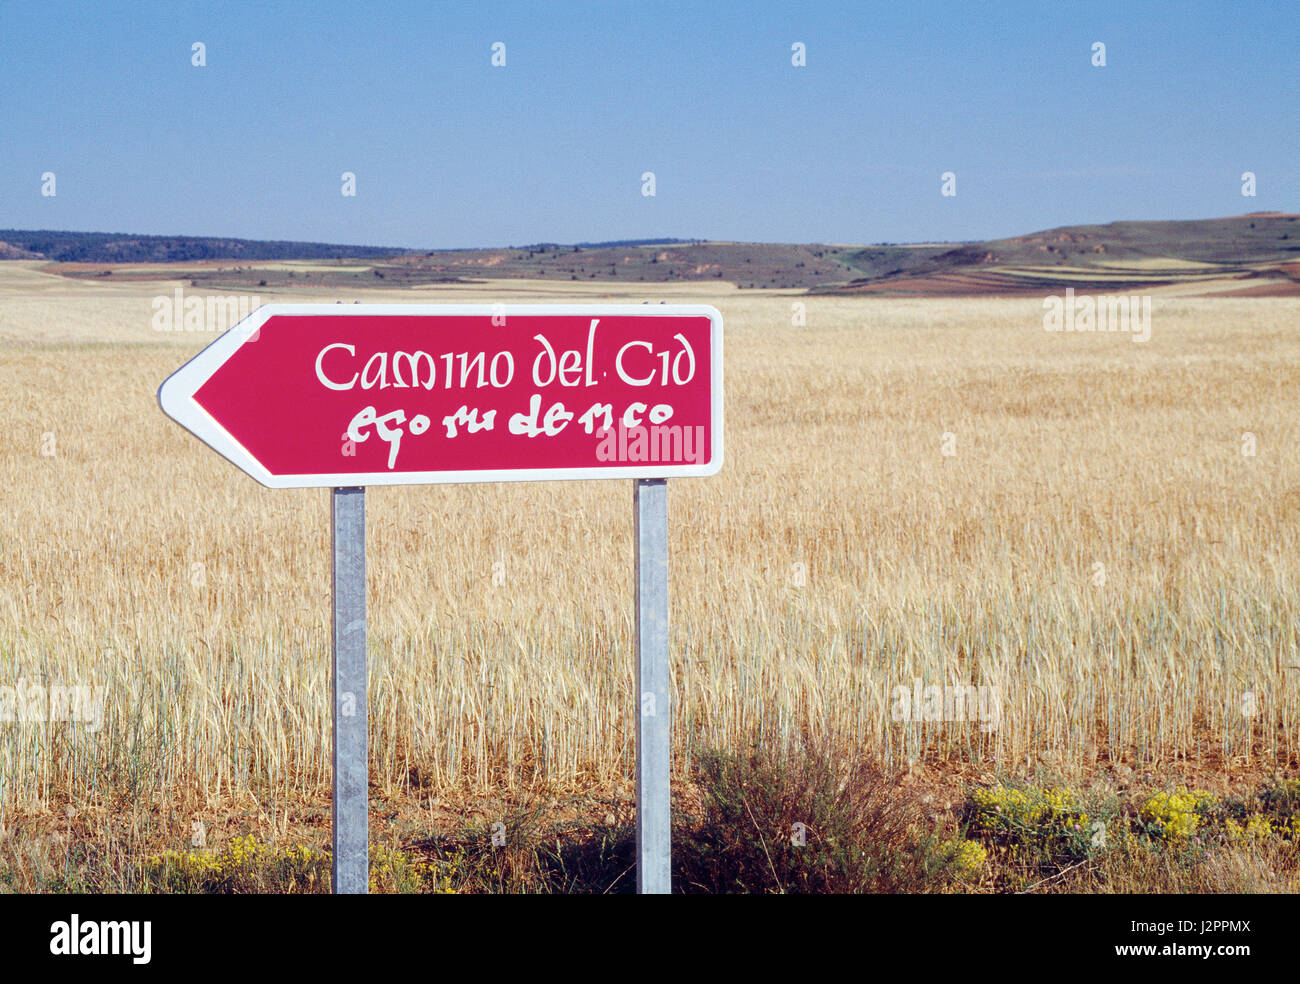 Camino del Cid road sign. Gormaz, Soria province, Castilla Leon, Spain. Stock Photo